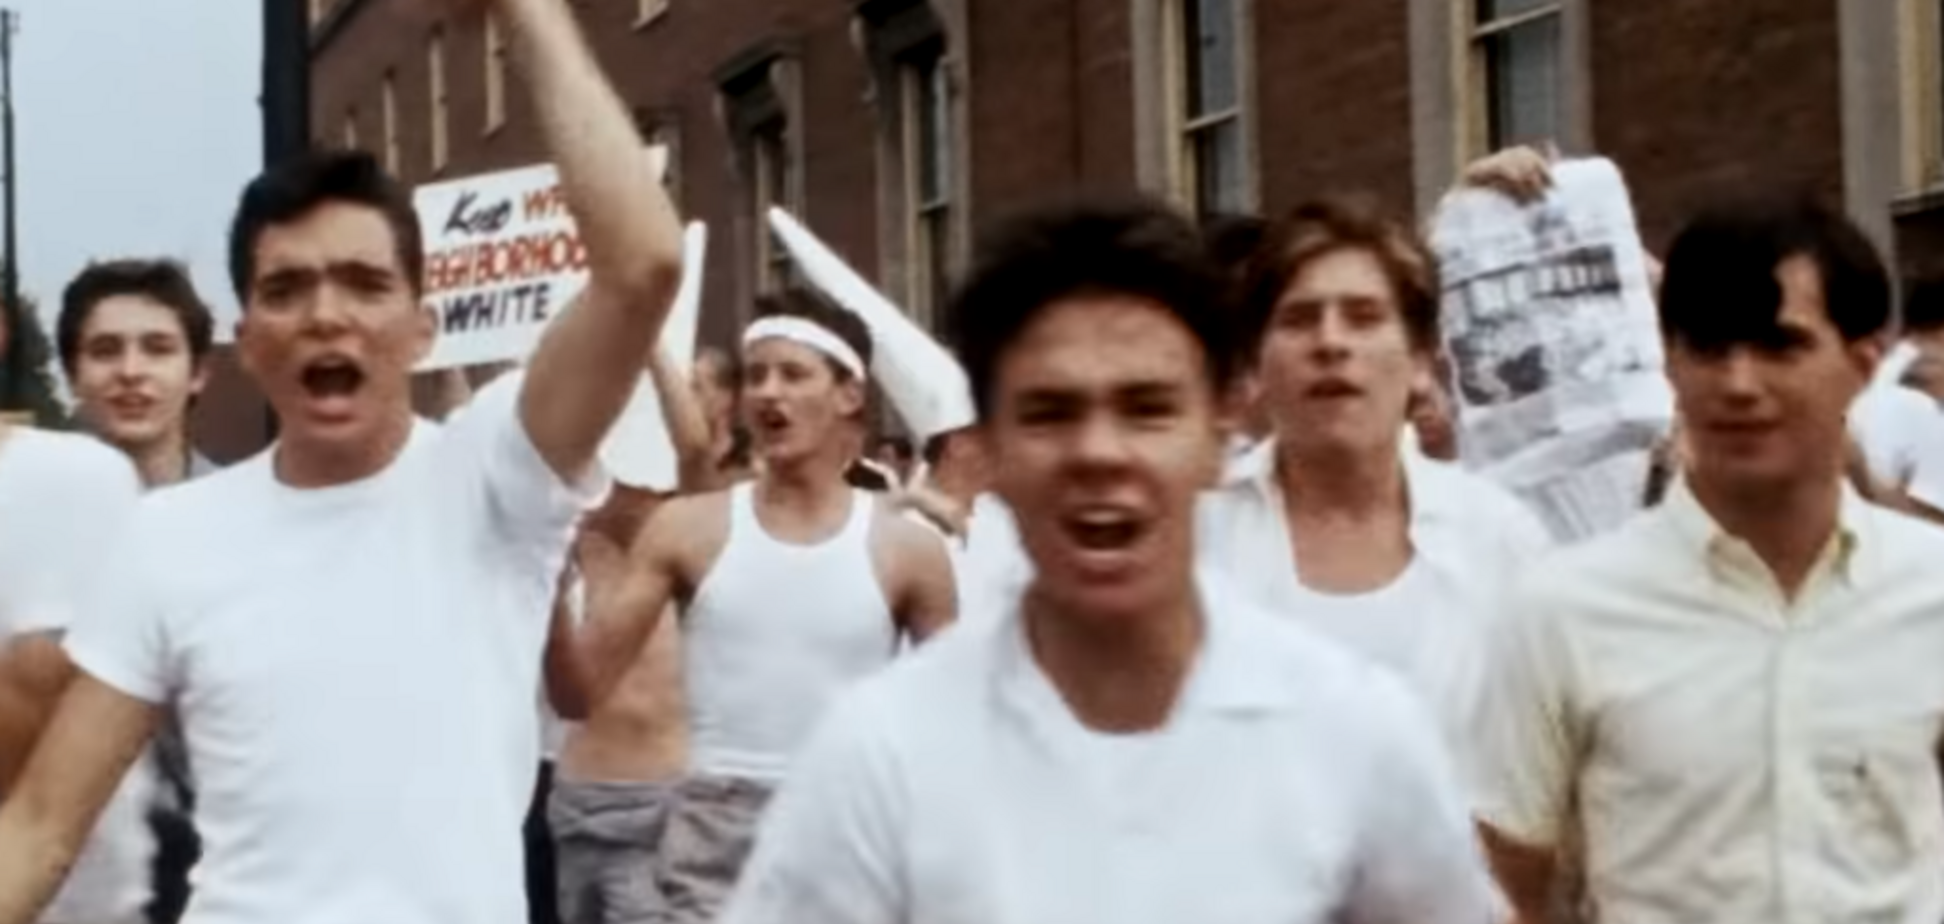 10 найкращих фільмів, які пояснюють протести у США. Трейлери